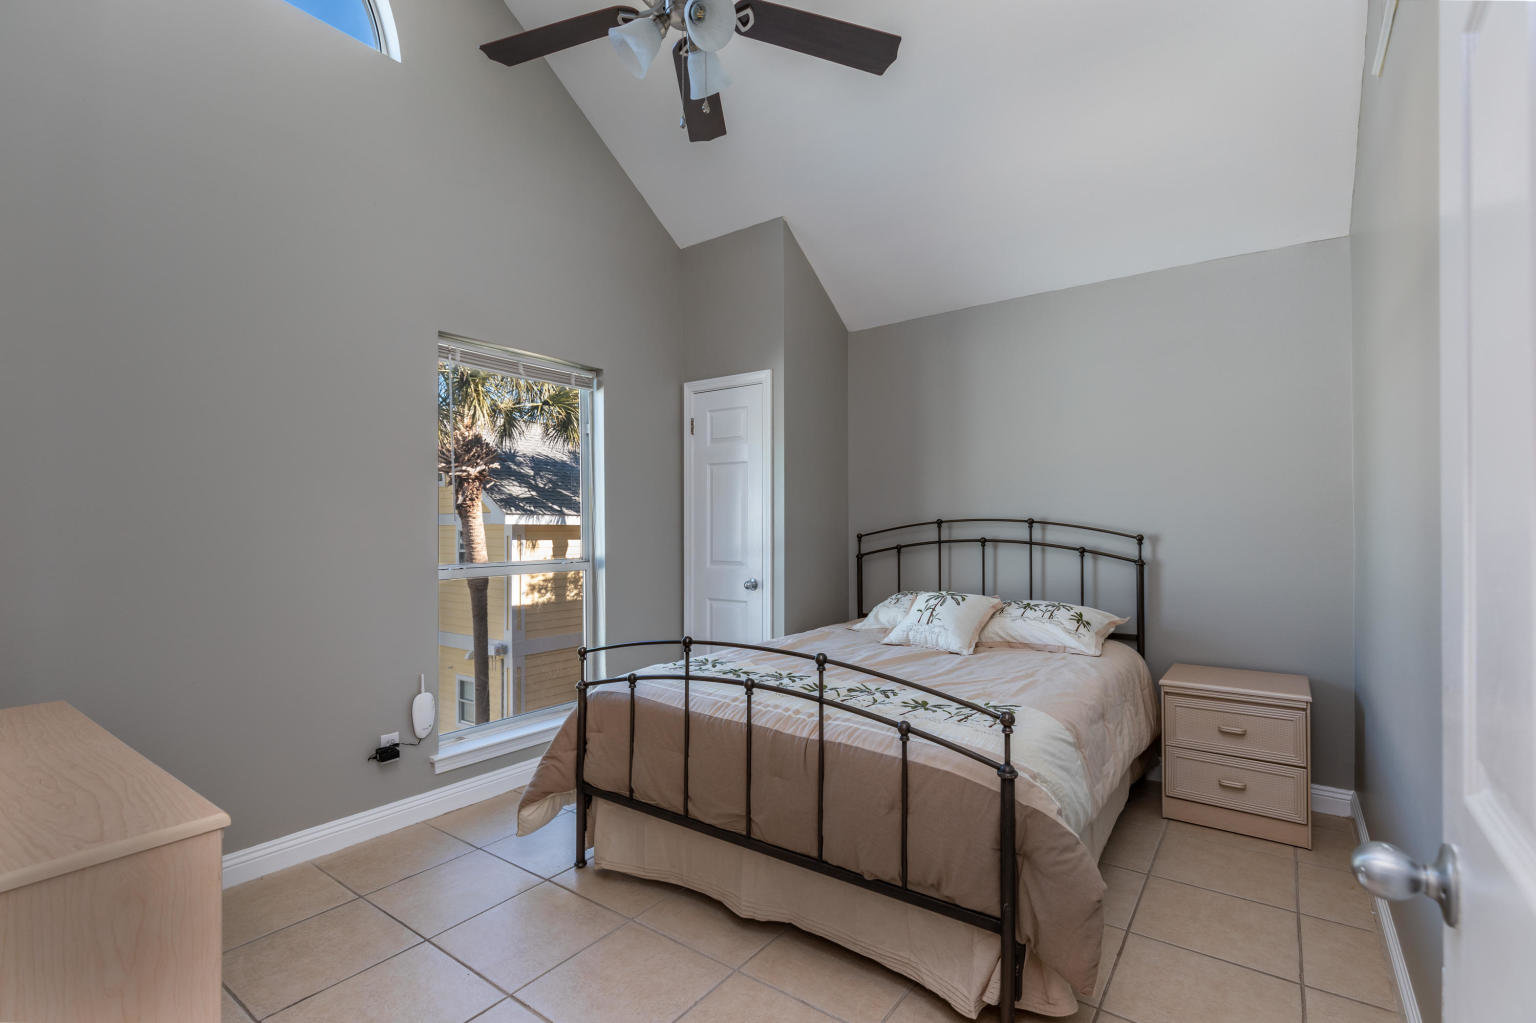 2nd floor bedroom at Nantucket Cottages, Destin, FL